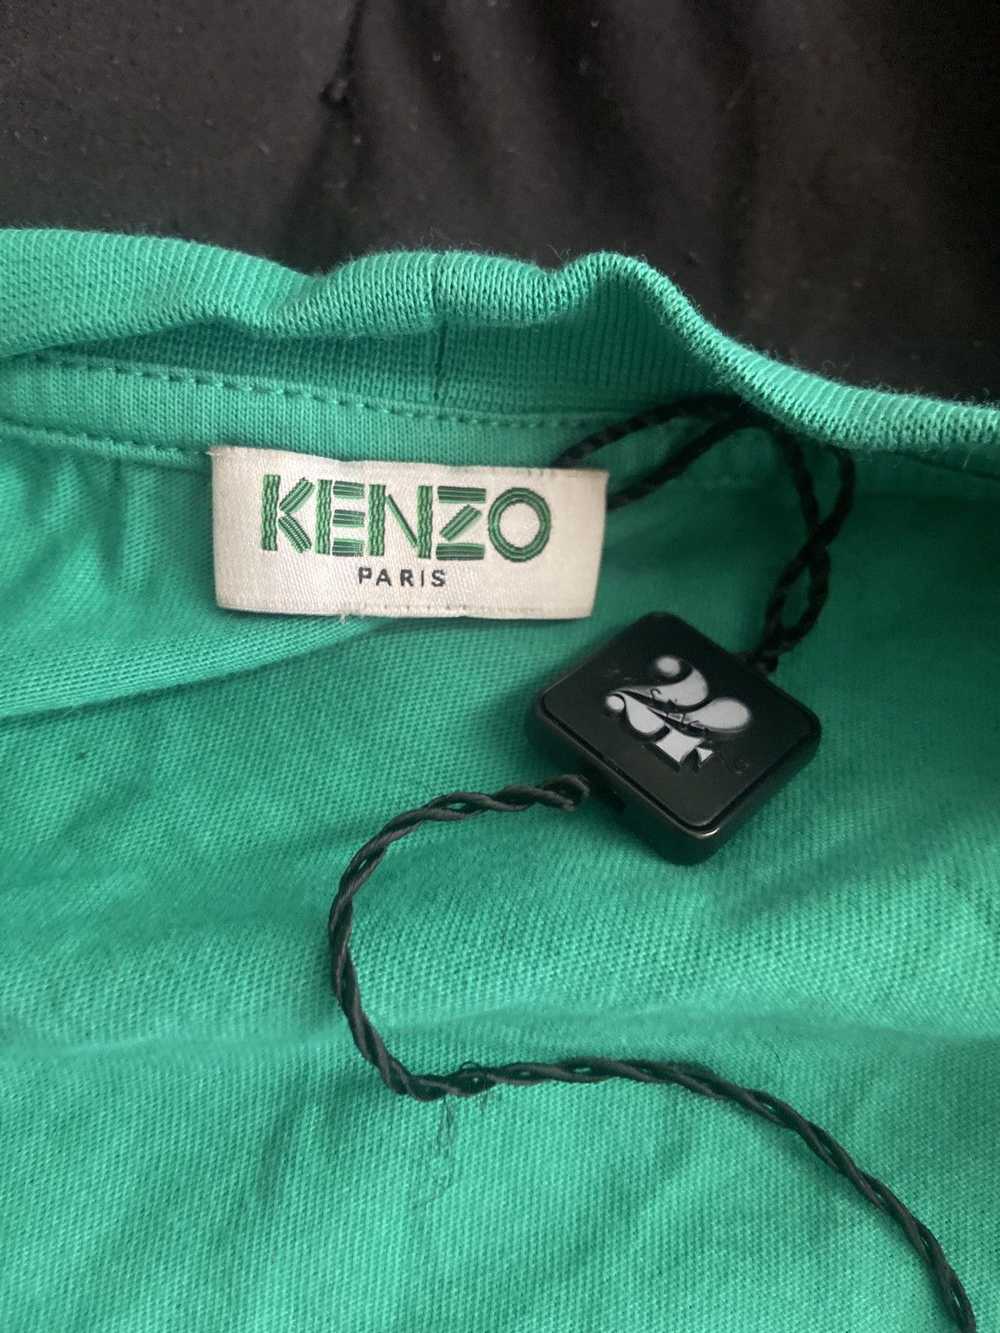 Kenzo Kenzo signature logo t shirt - image 6